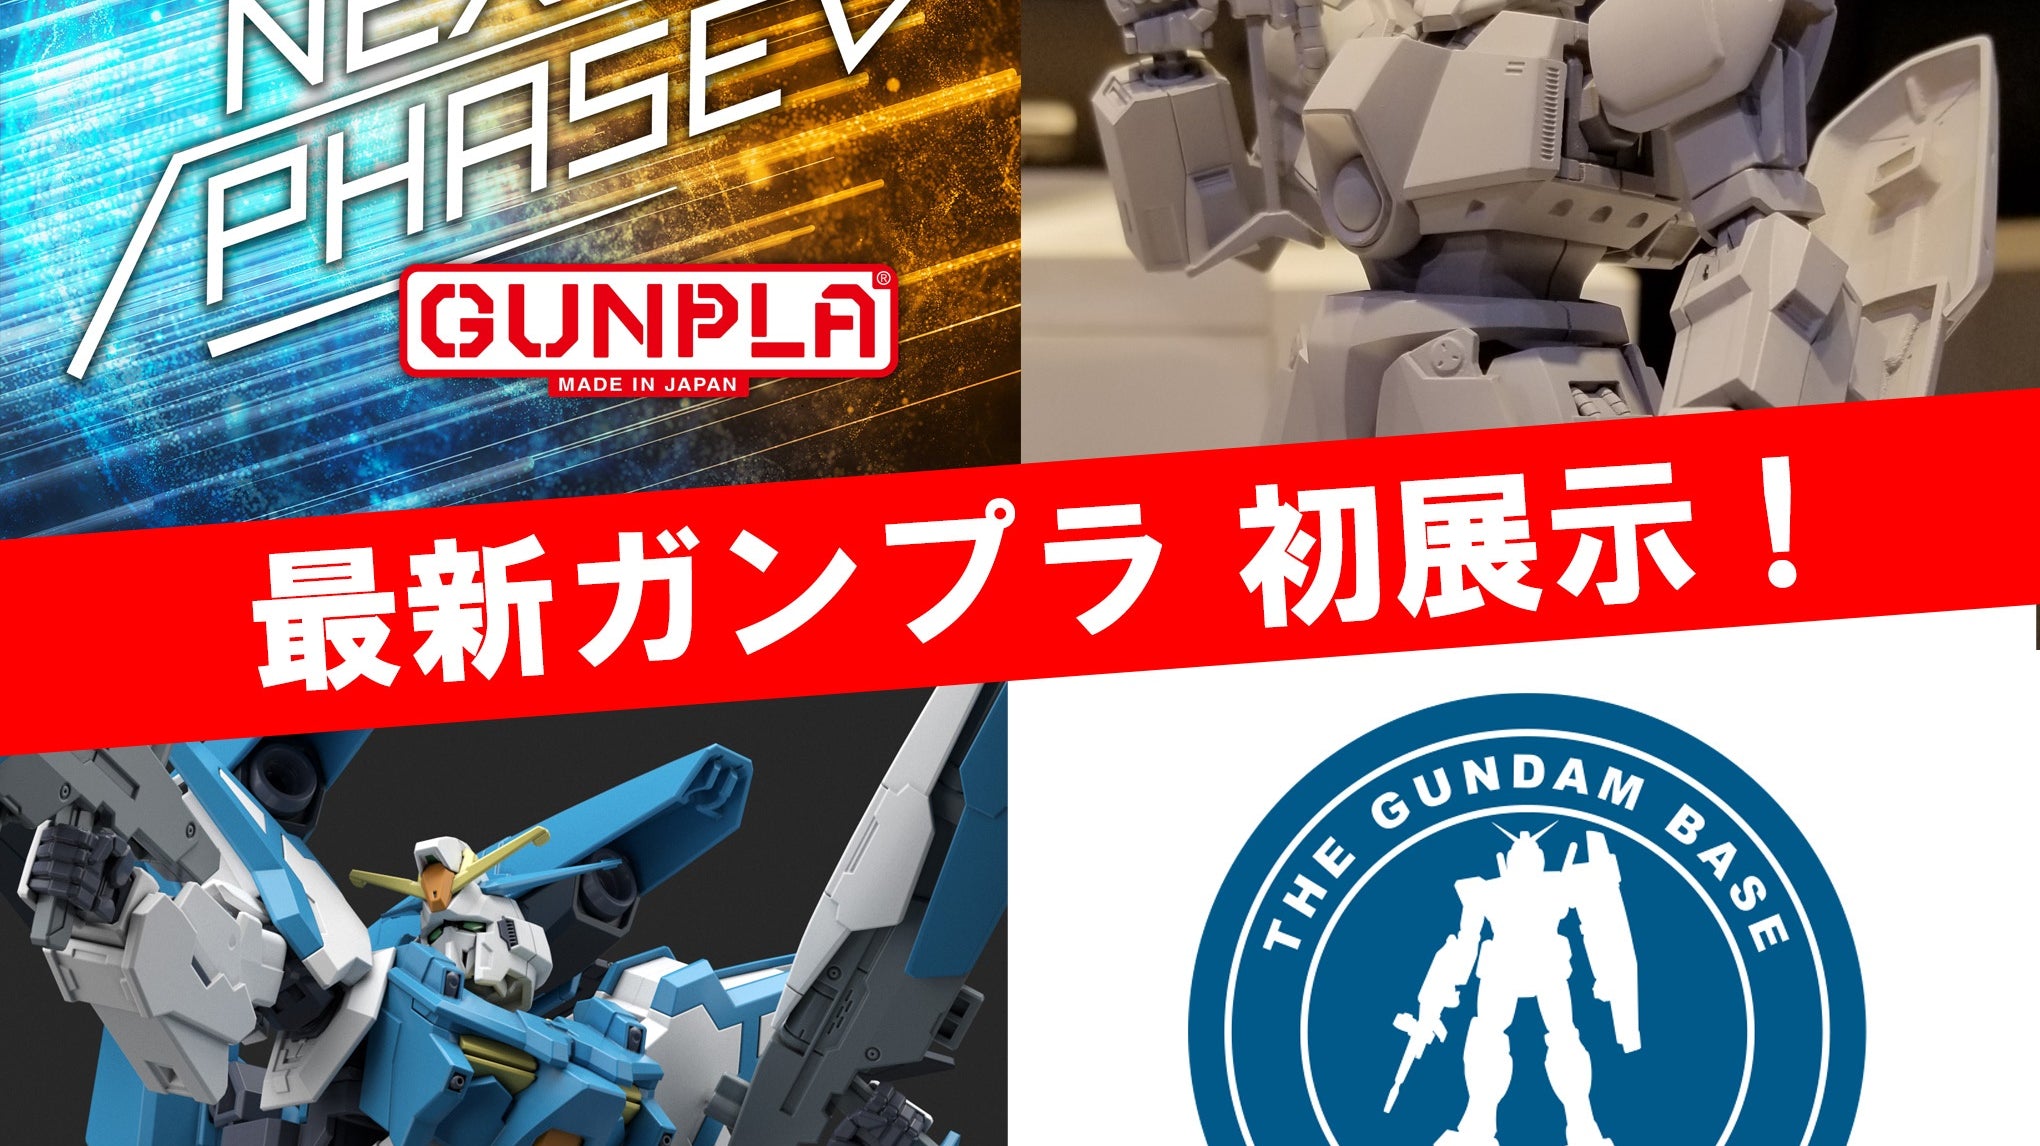 Gundam Base Tokyo Exhibition -「NEXT PHASE GUNPLA」